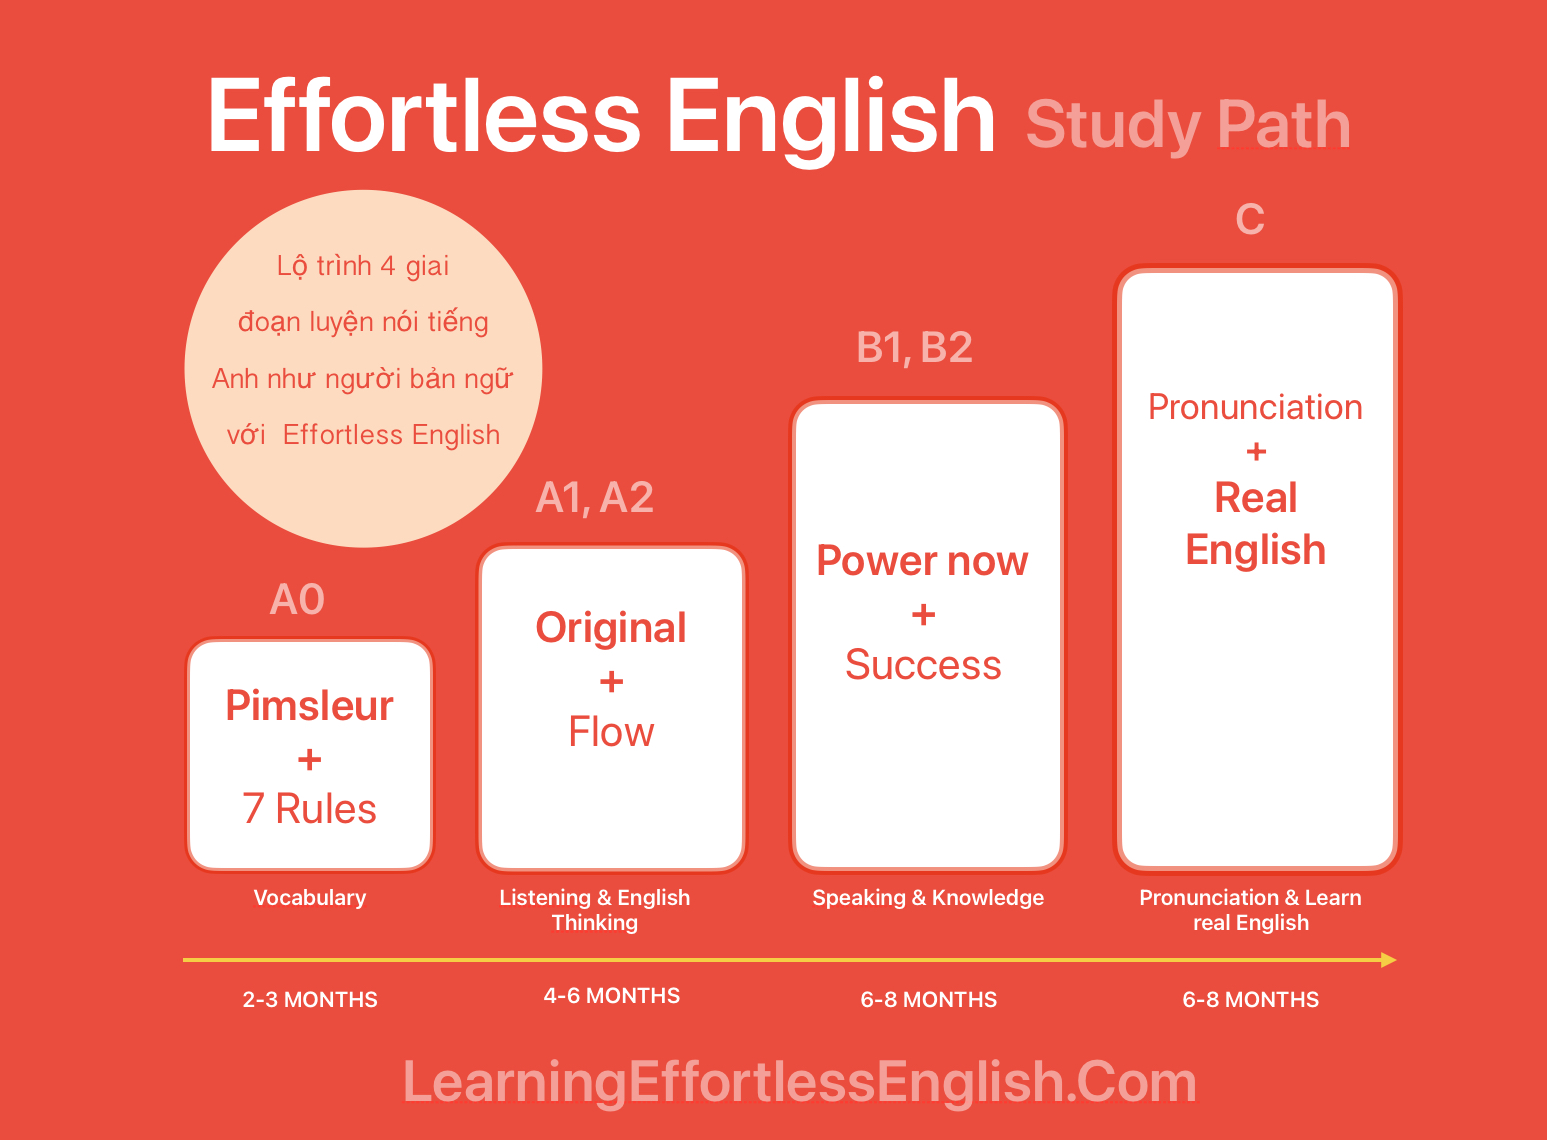 Lộ trình effortless english